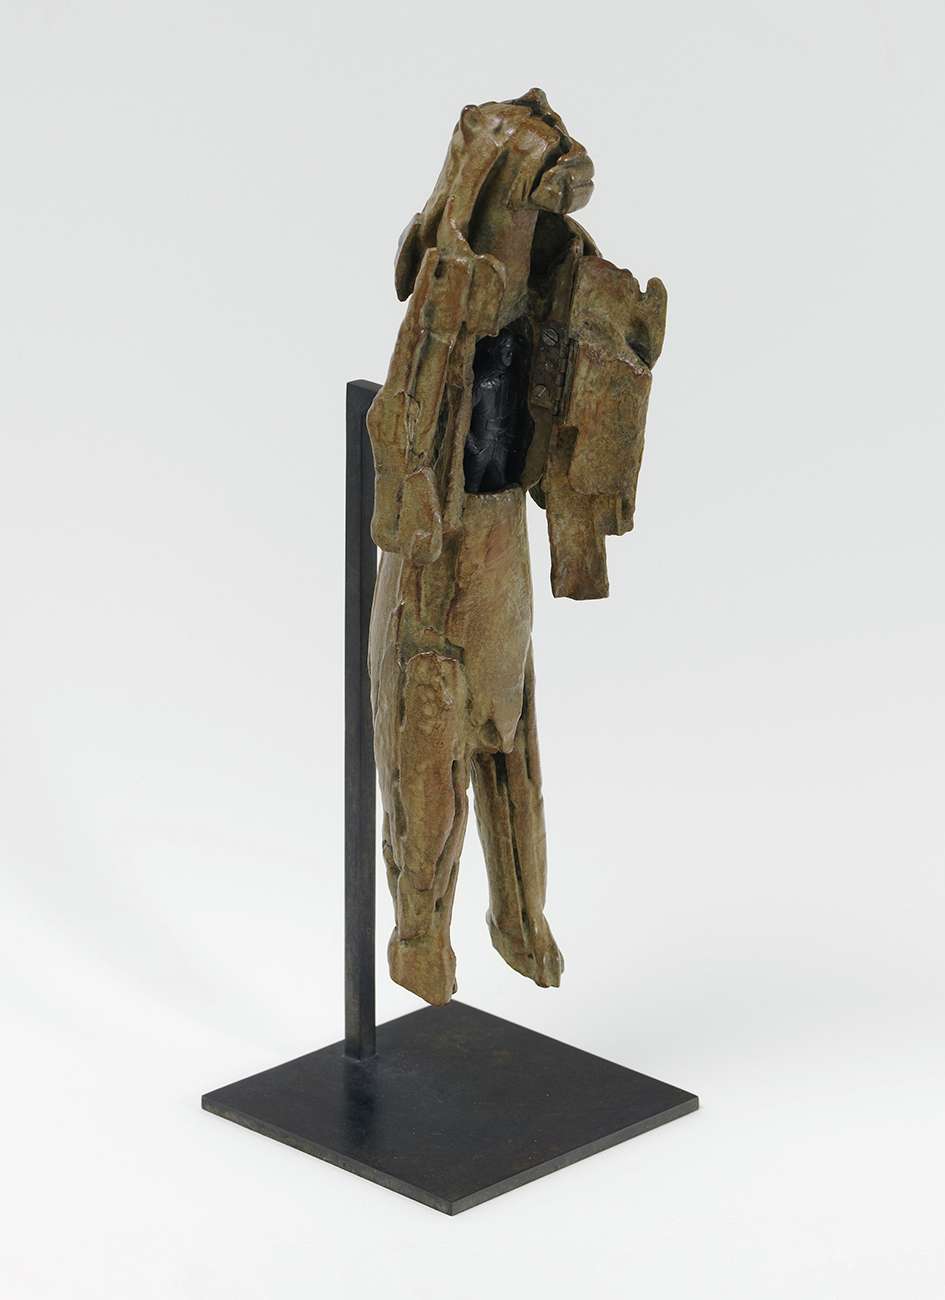 Abraham Poincheval, L'Homme lion, 2020 Bronze31 × 8.5 × 8 cm / 12 2/8 × 3 3/8 × 3 1/8 in.Socle en laiton / Brass plinth 36 × 12 × 12 cm / 14 1/8 × 4 6/8 × 4 6/8 in.